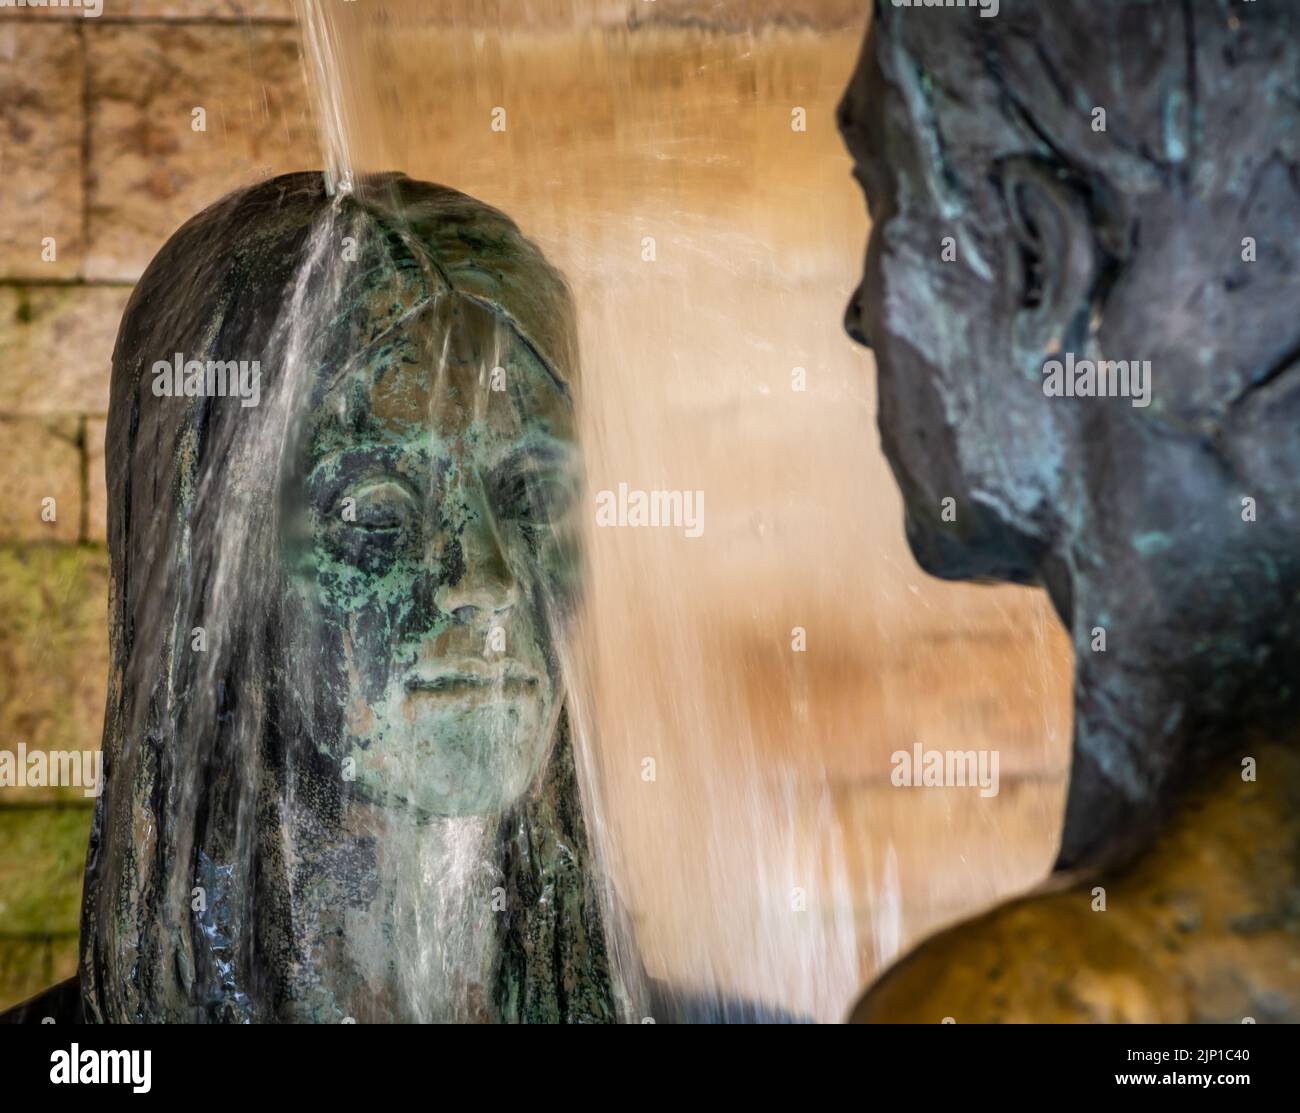 giardino dell'amore con statua panoramica dell'uomo e della donna innamorati - statua in bronzo - giardini Trauttmansdorff di Merano - Alto Adige, Italia settentrionale - Merano Foto Stock